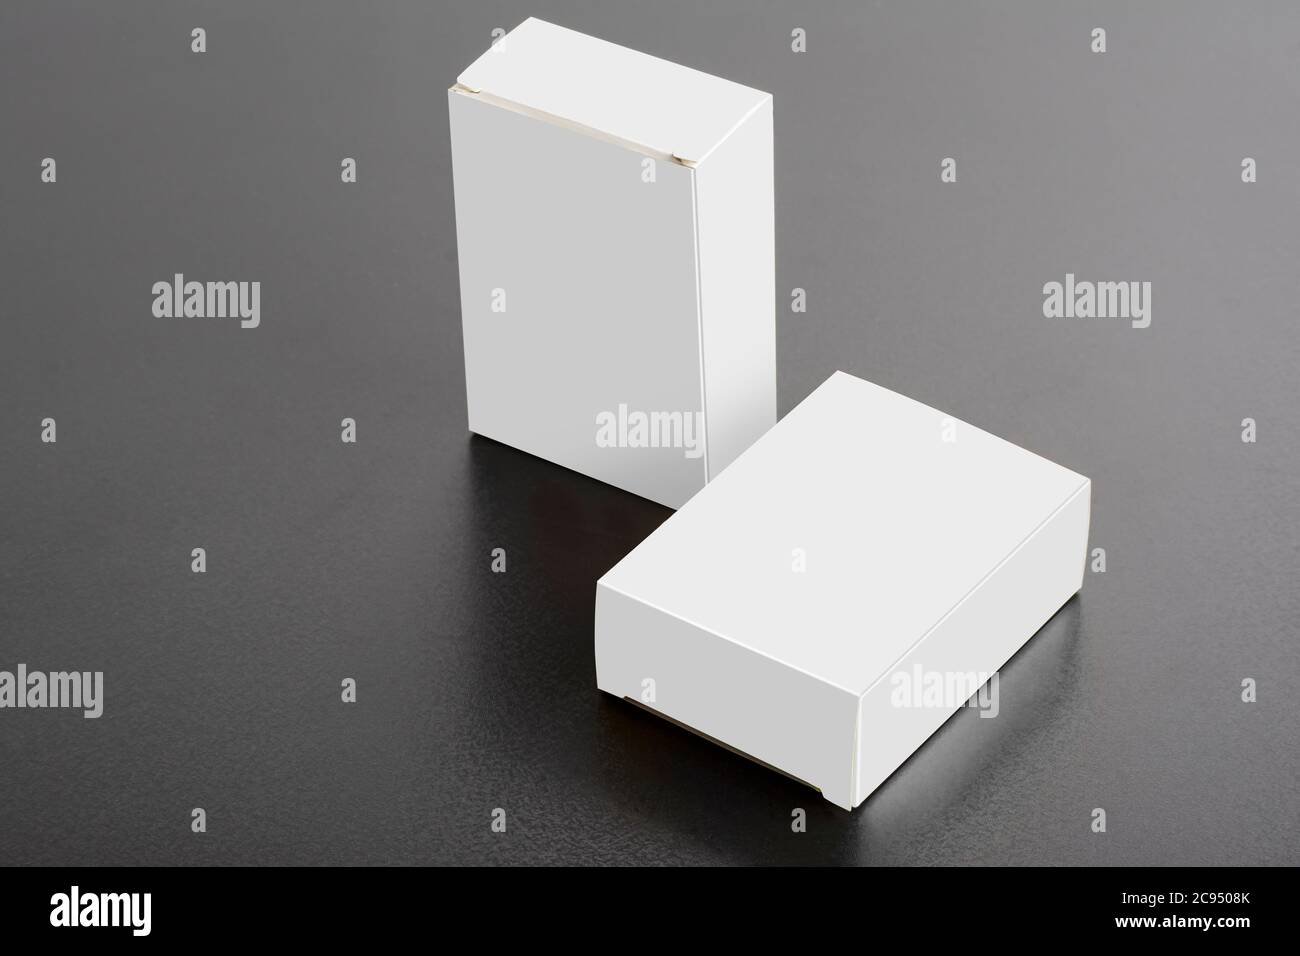 Zwei Pillboxen Pakete auf dunklem Hintergrund, editierbare Mock-up-Serie bereit für Ihr Design, Auswahlpfad enthalten. Stockfoto